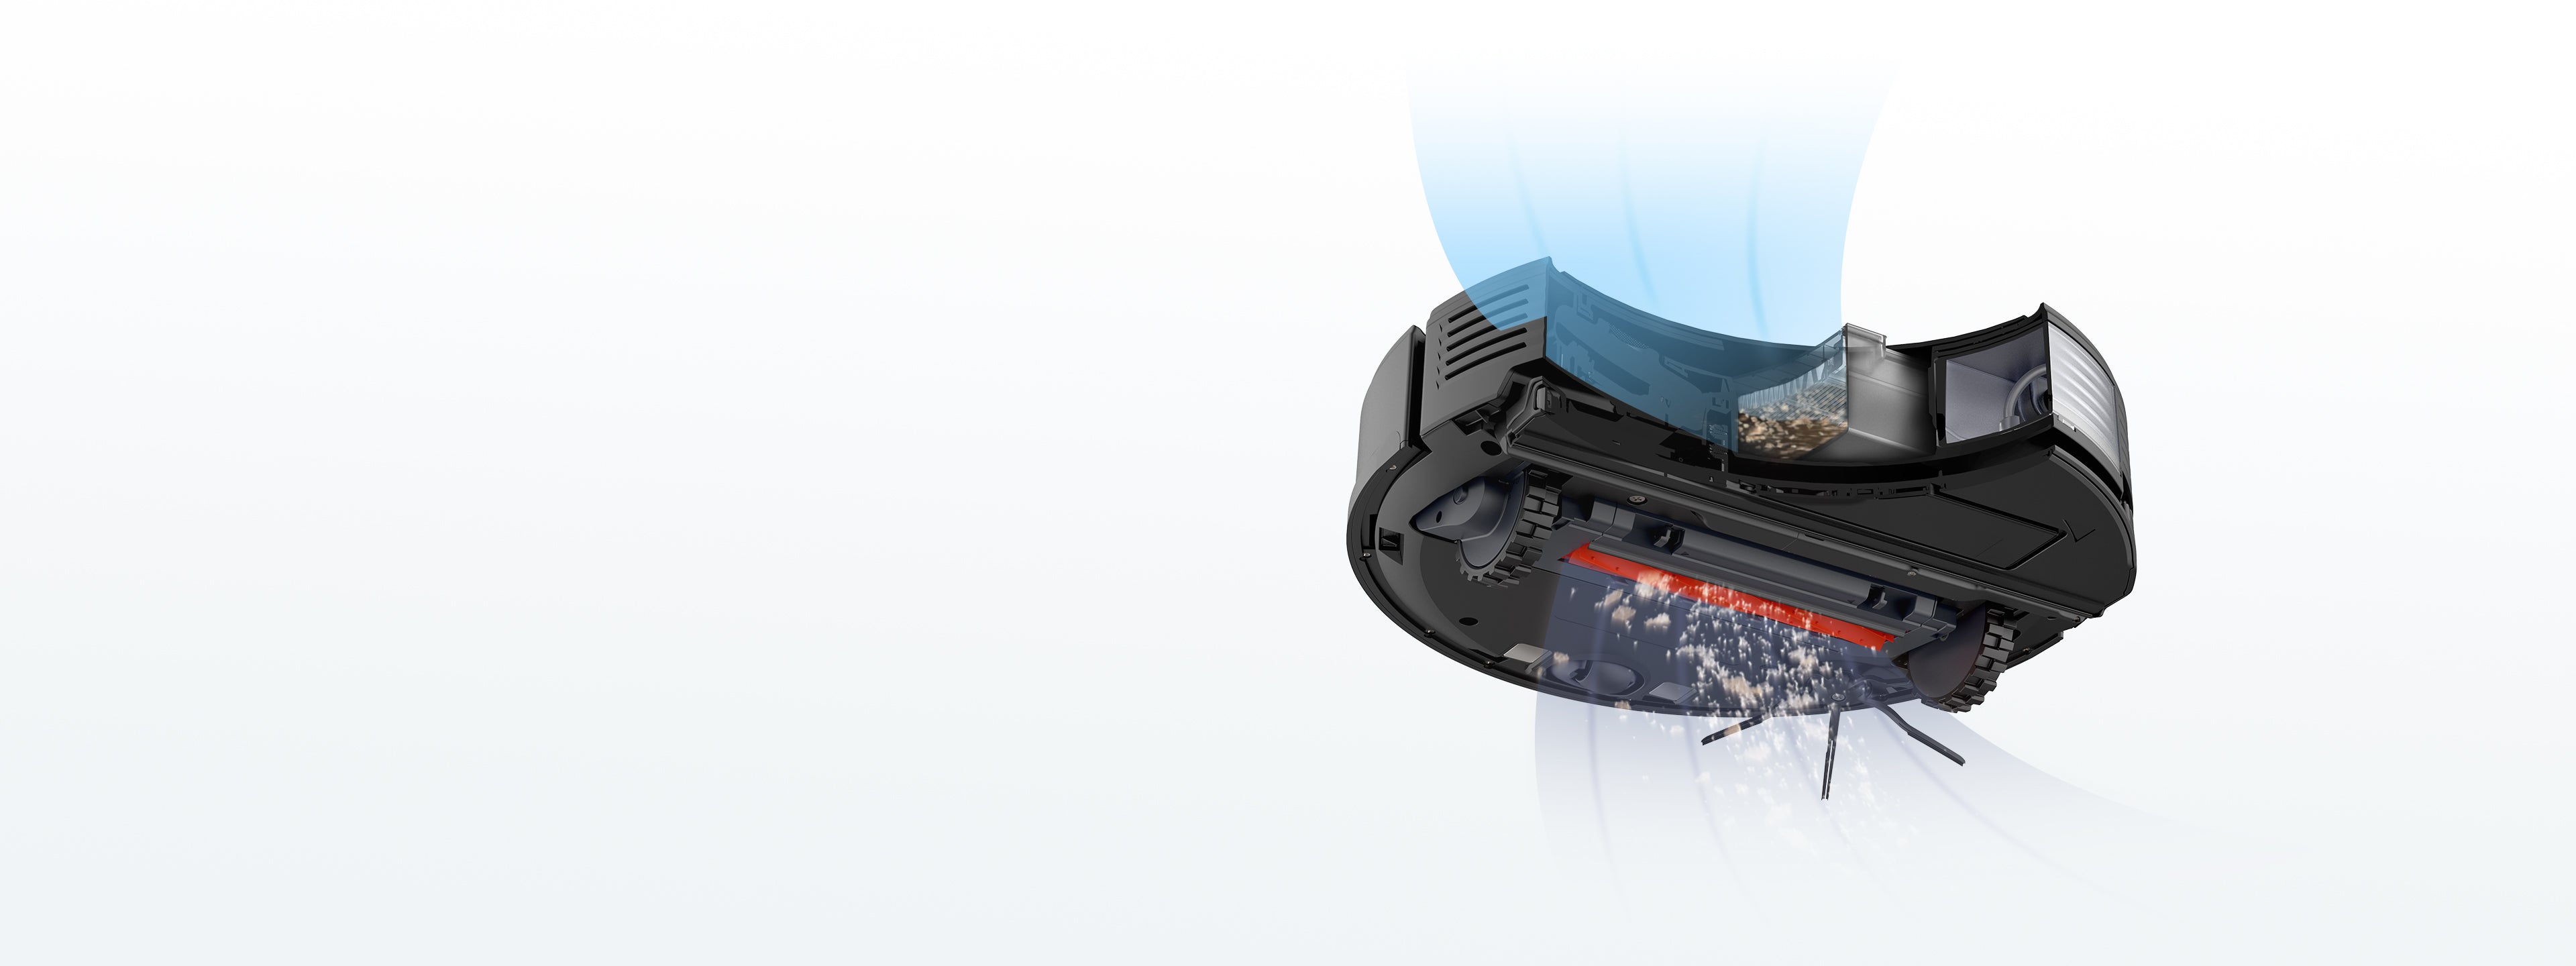 Мощность всасывания 2500 Па Roborock S7 легко справляется с пылью на полах, волосах на коврав и с другим мусором.